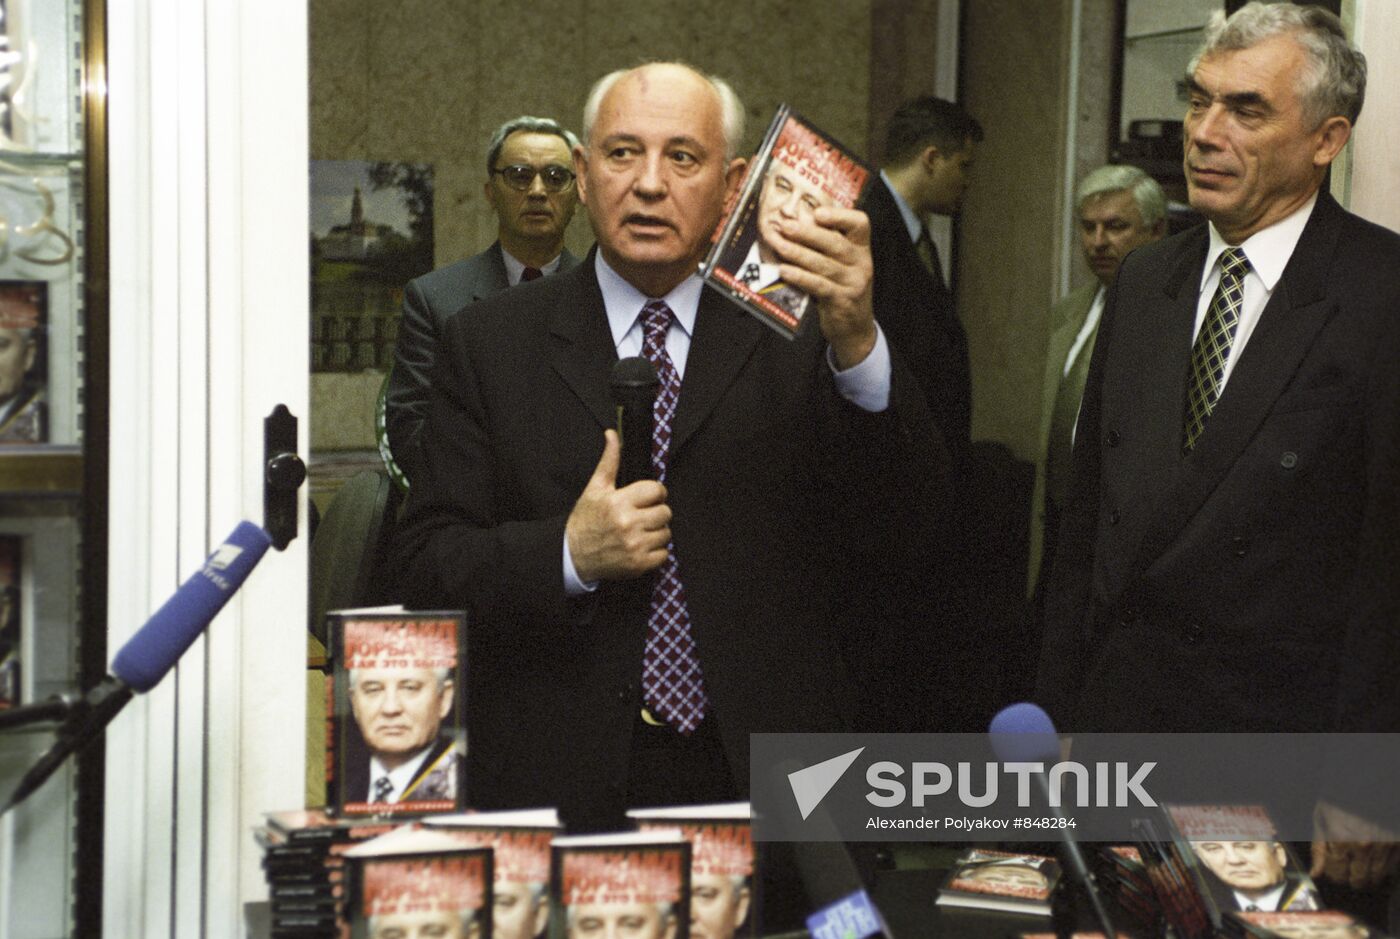 Mikhail Gorbachev presents his book